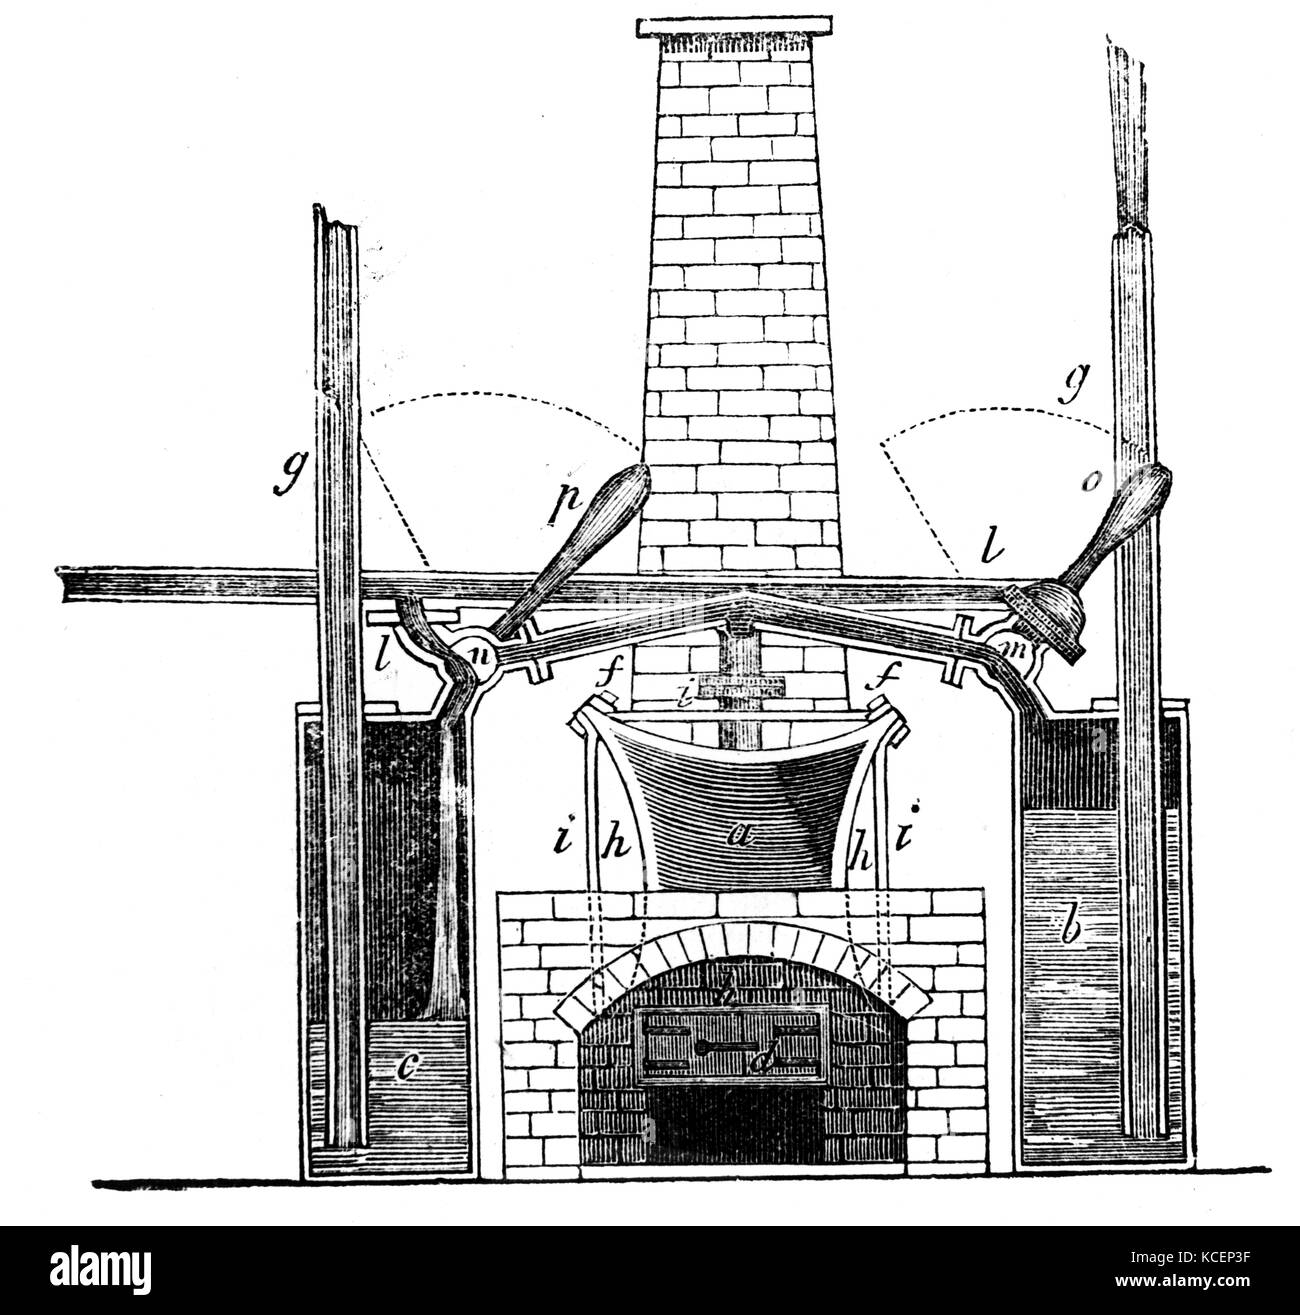 Ilustración mostrando Somerset, 2º Marqués de Worcester's motor a vapor. Edward Somerset, 2º Marqués de Worcester (1602-1667), un inglés implicado en monárquicos y inventor. Fecha Siglo xvii Fotografía